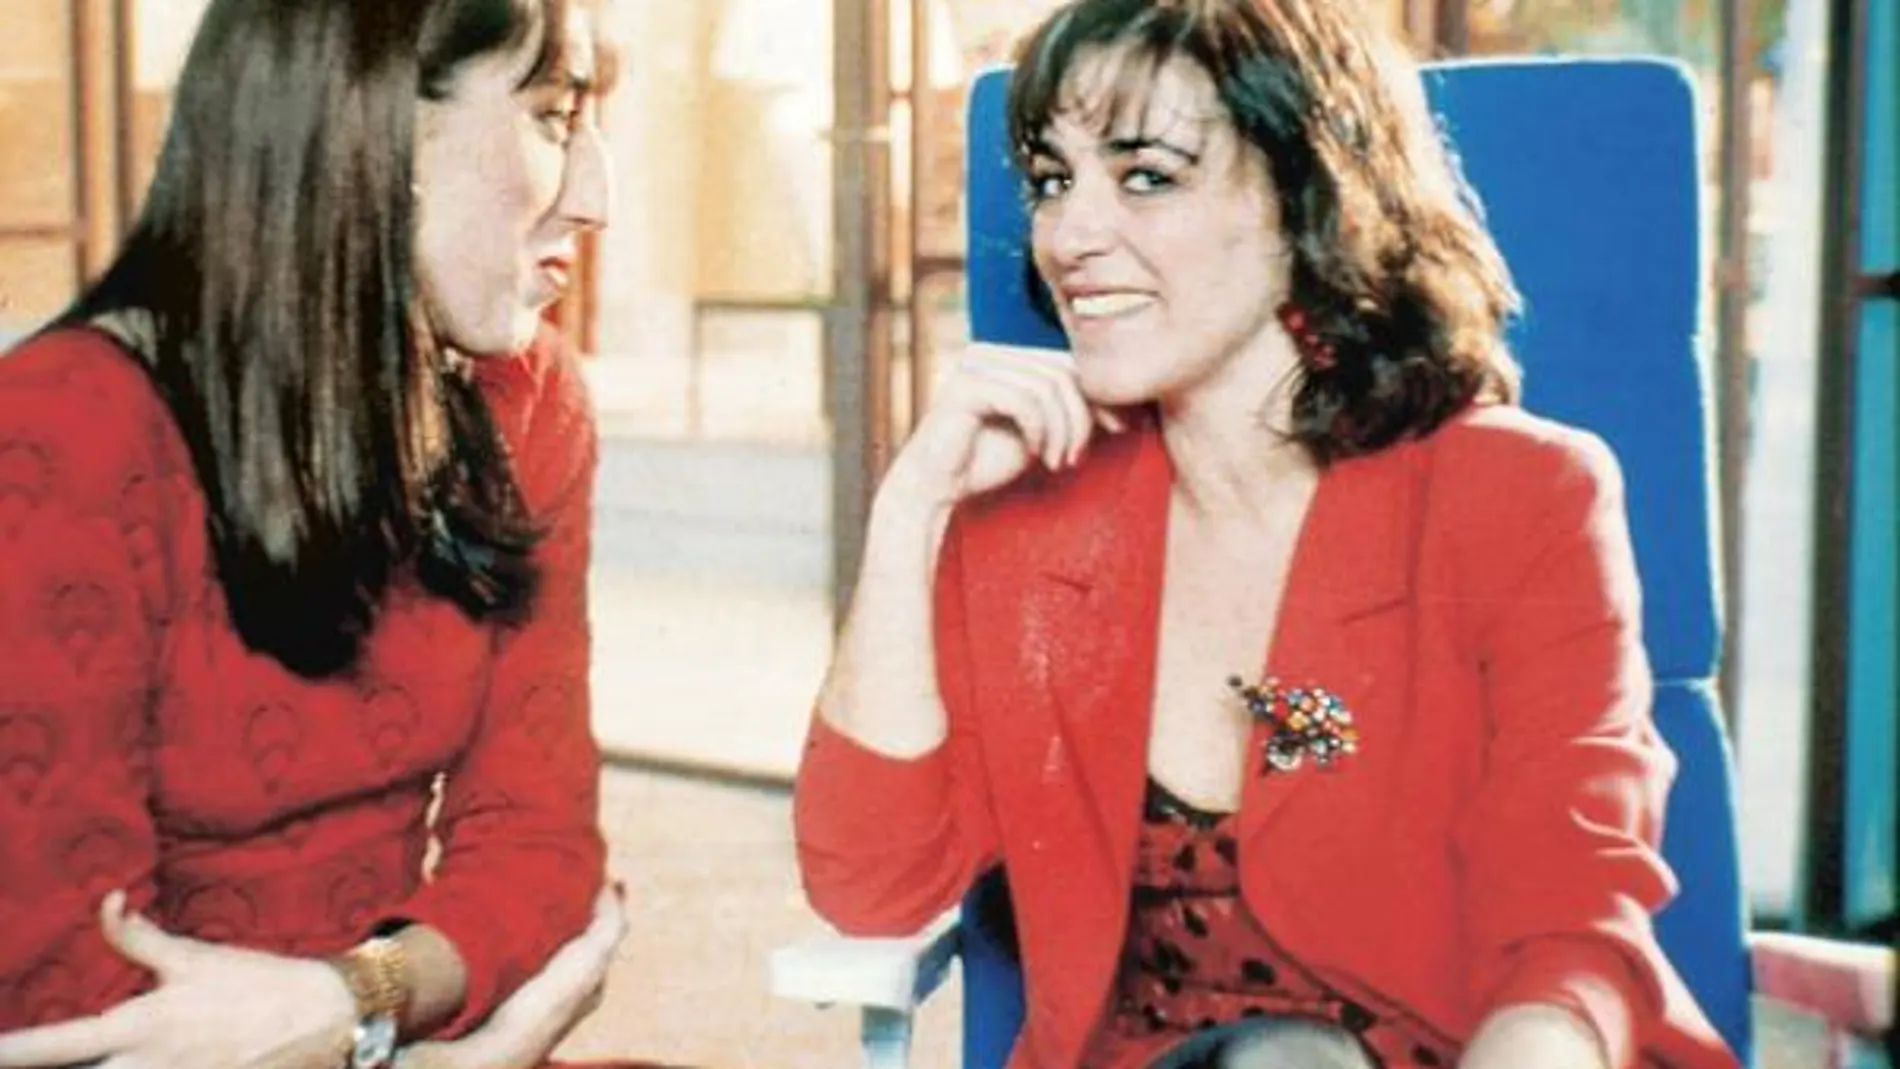 Rossy de Palma y Carmen Maura en "Mujeres al borde de un ataque de nervios"